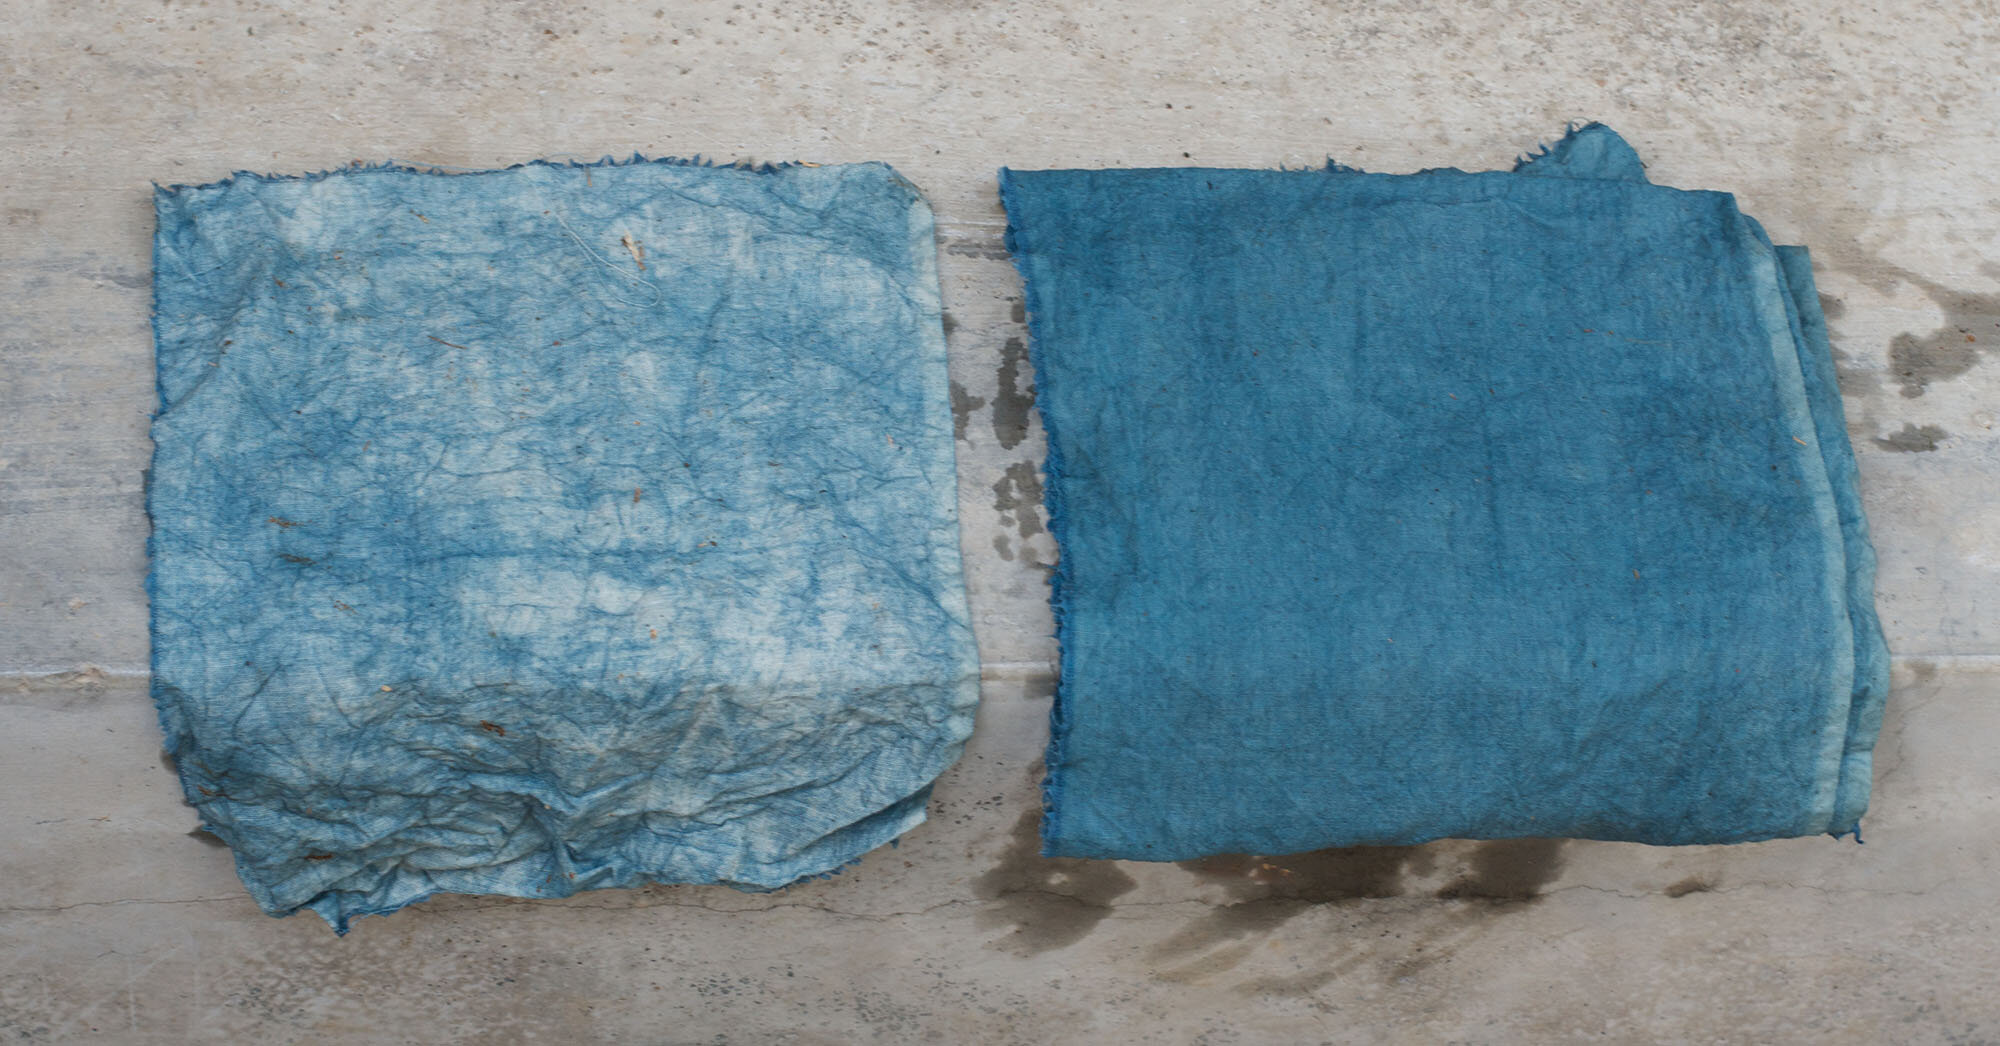 Indigo Dye Tutorial - Textile Techniques - How To Dye Fabric 